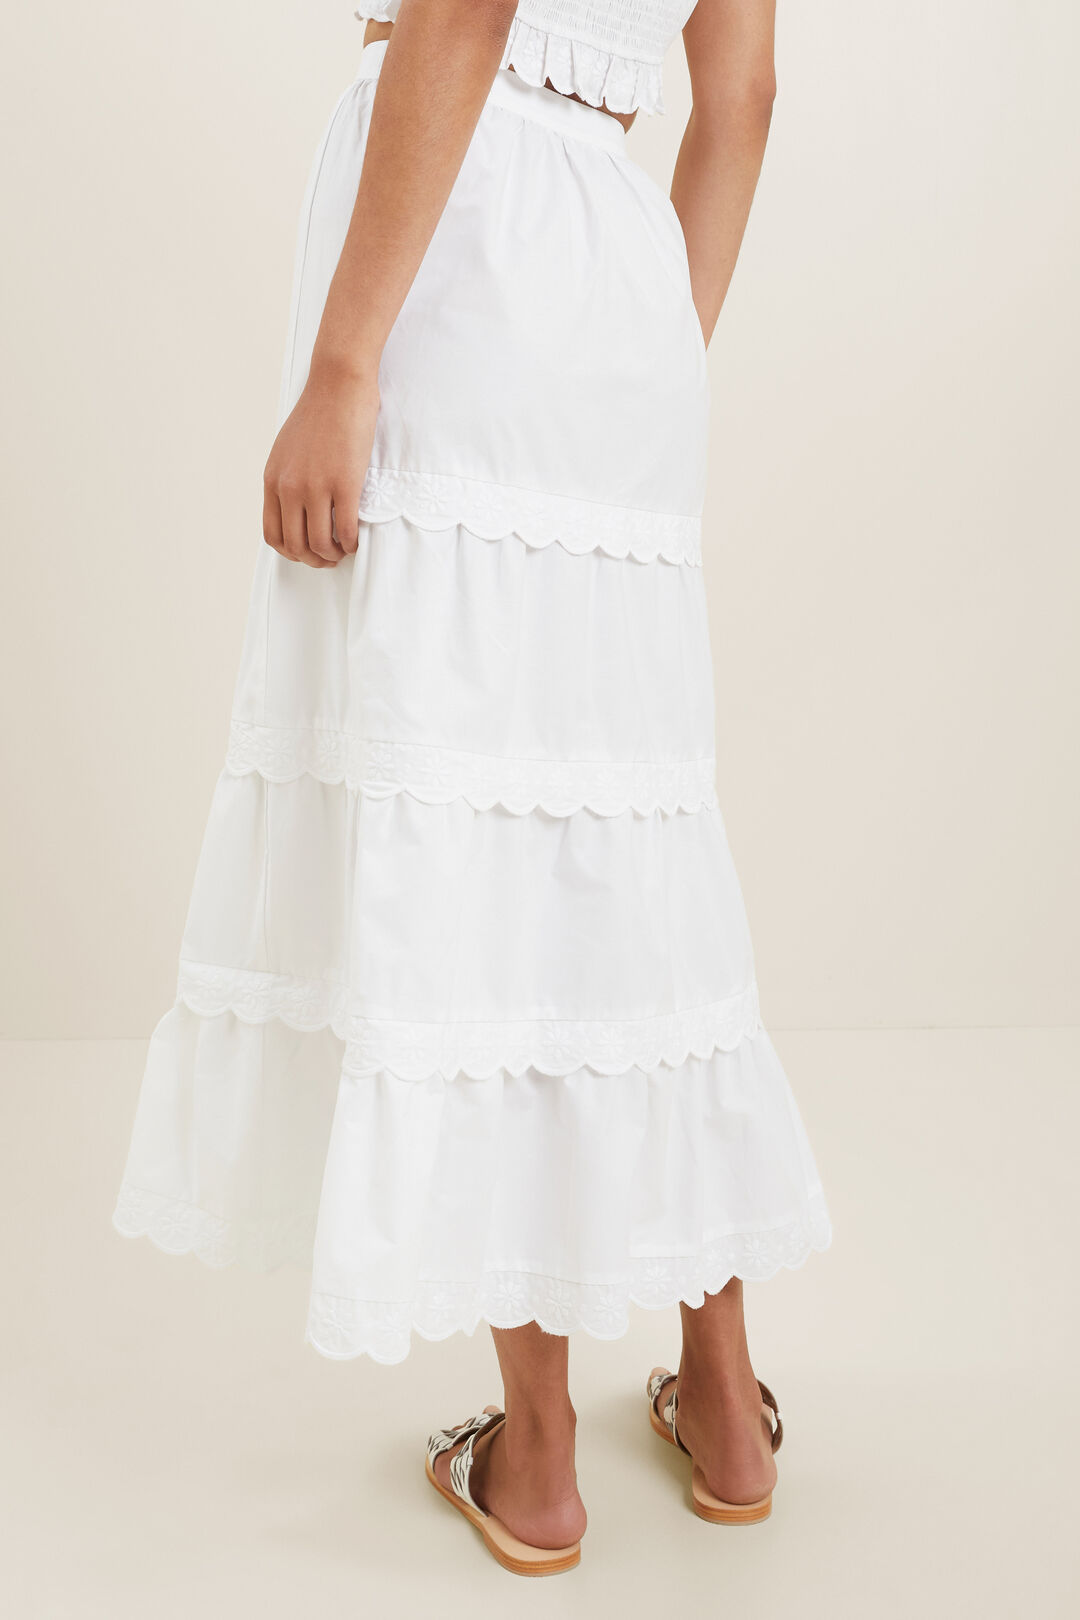 Scallop Trim Maxi Skirt  Whisper White  hi-res